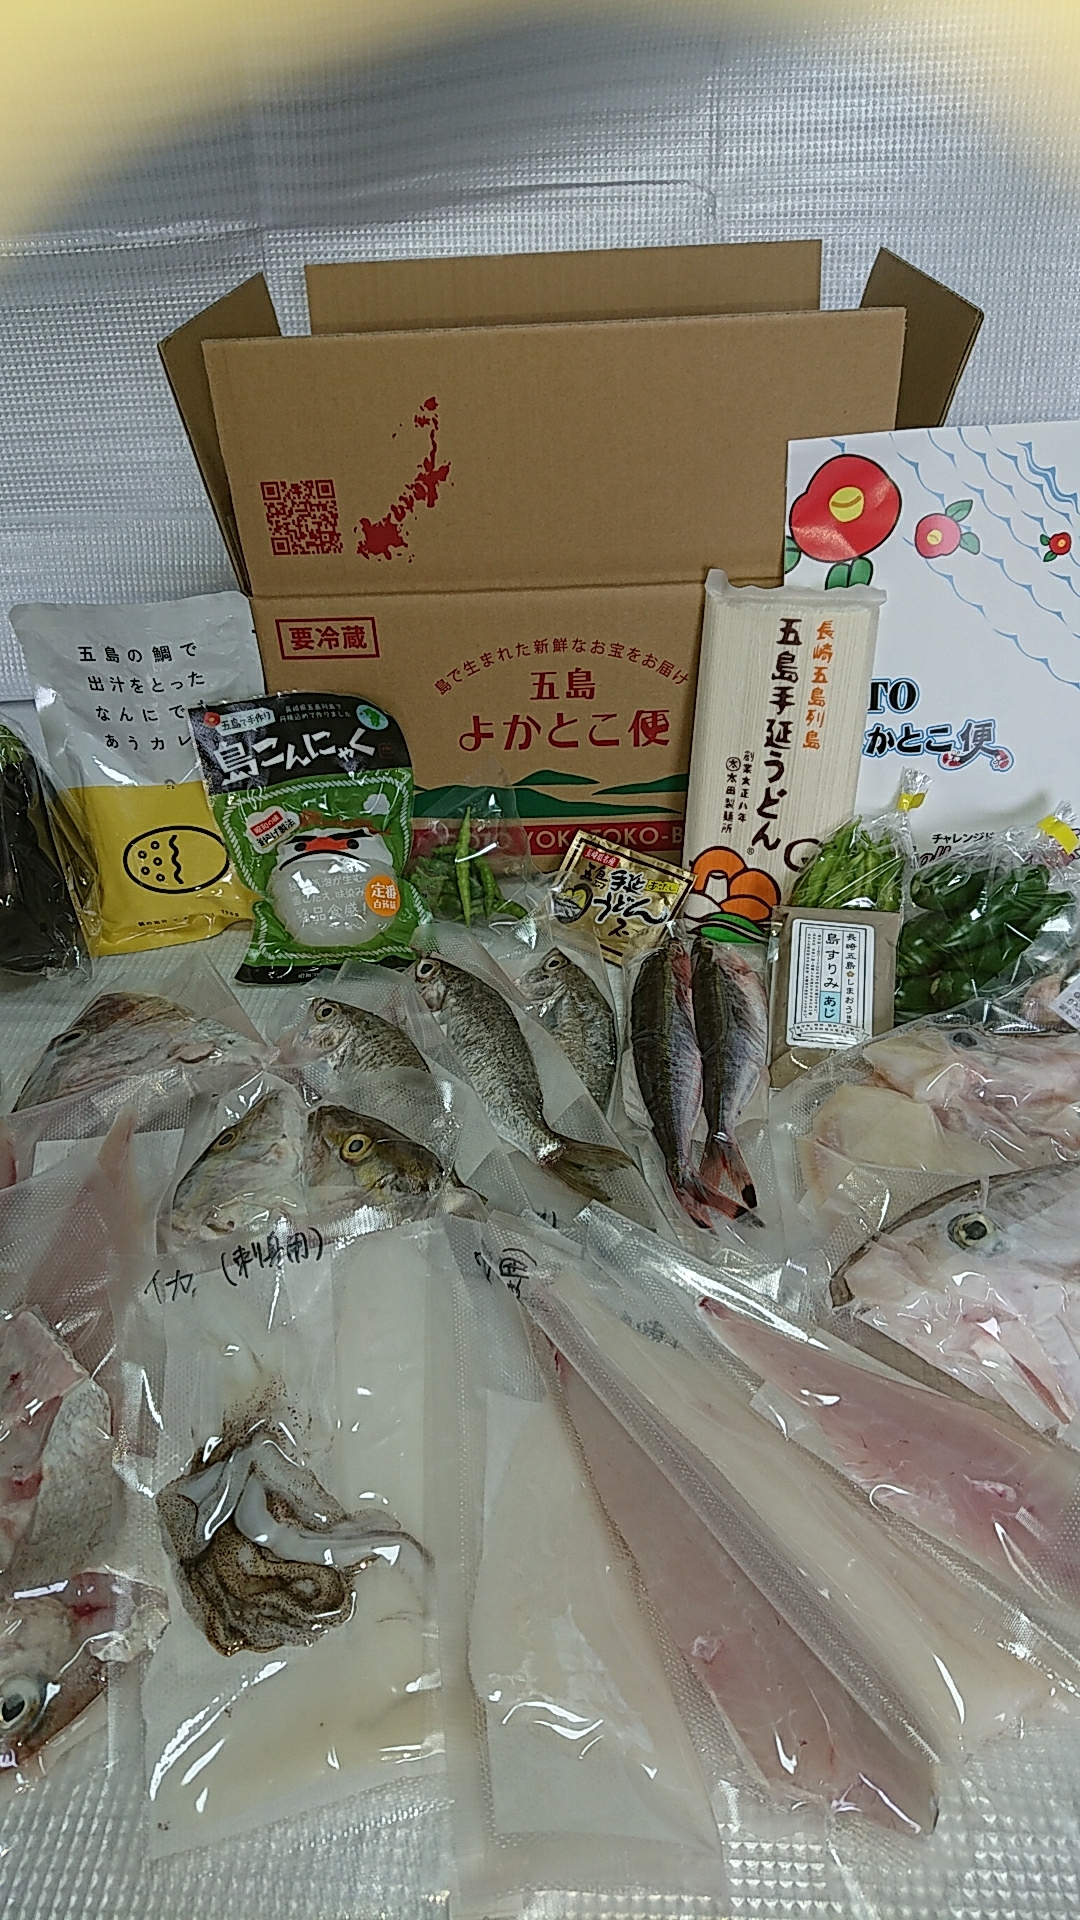  五島産 鮮魚 アゴ出汁茶漬け 8種セット  [RBL015]